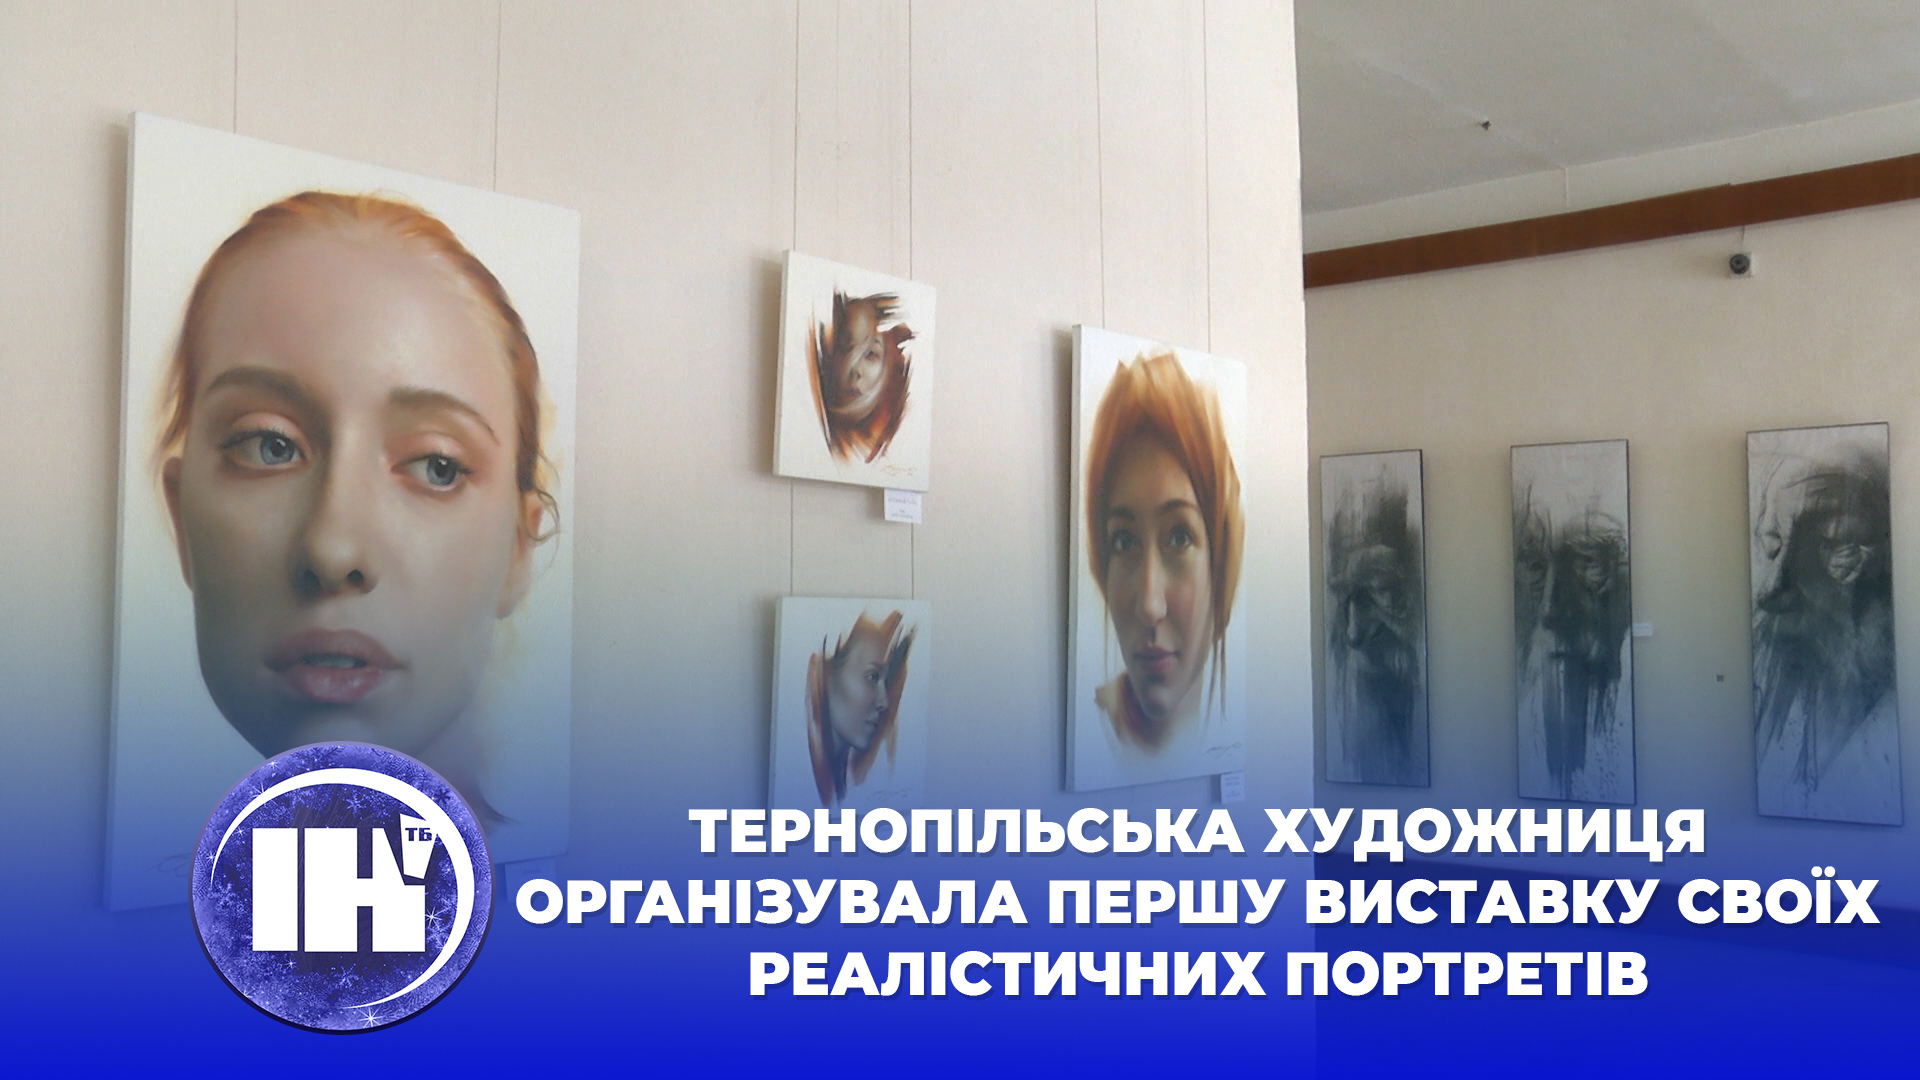 Тернопільська художниця організувала першу виставку своїх реалістичних портретів